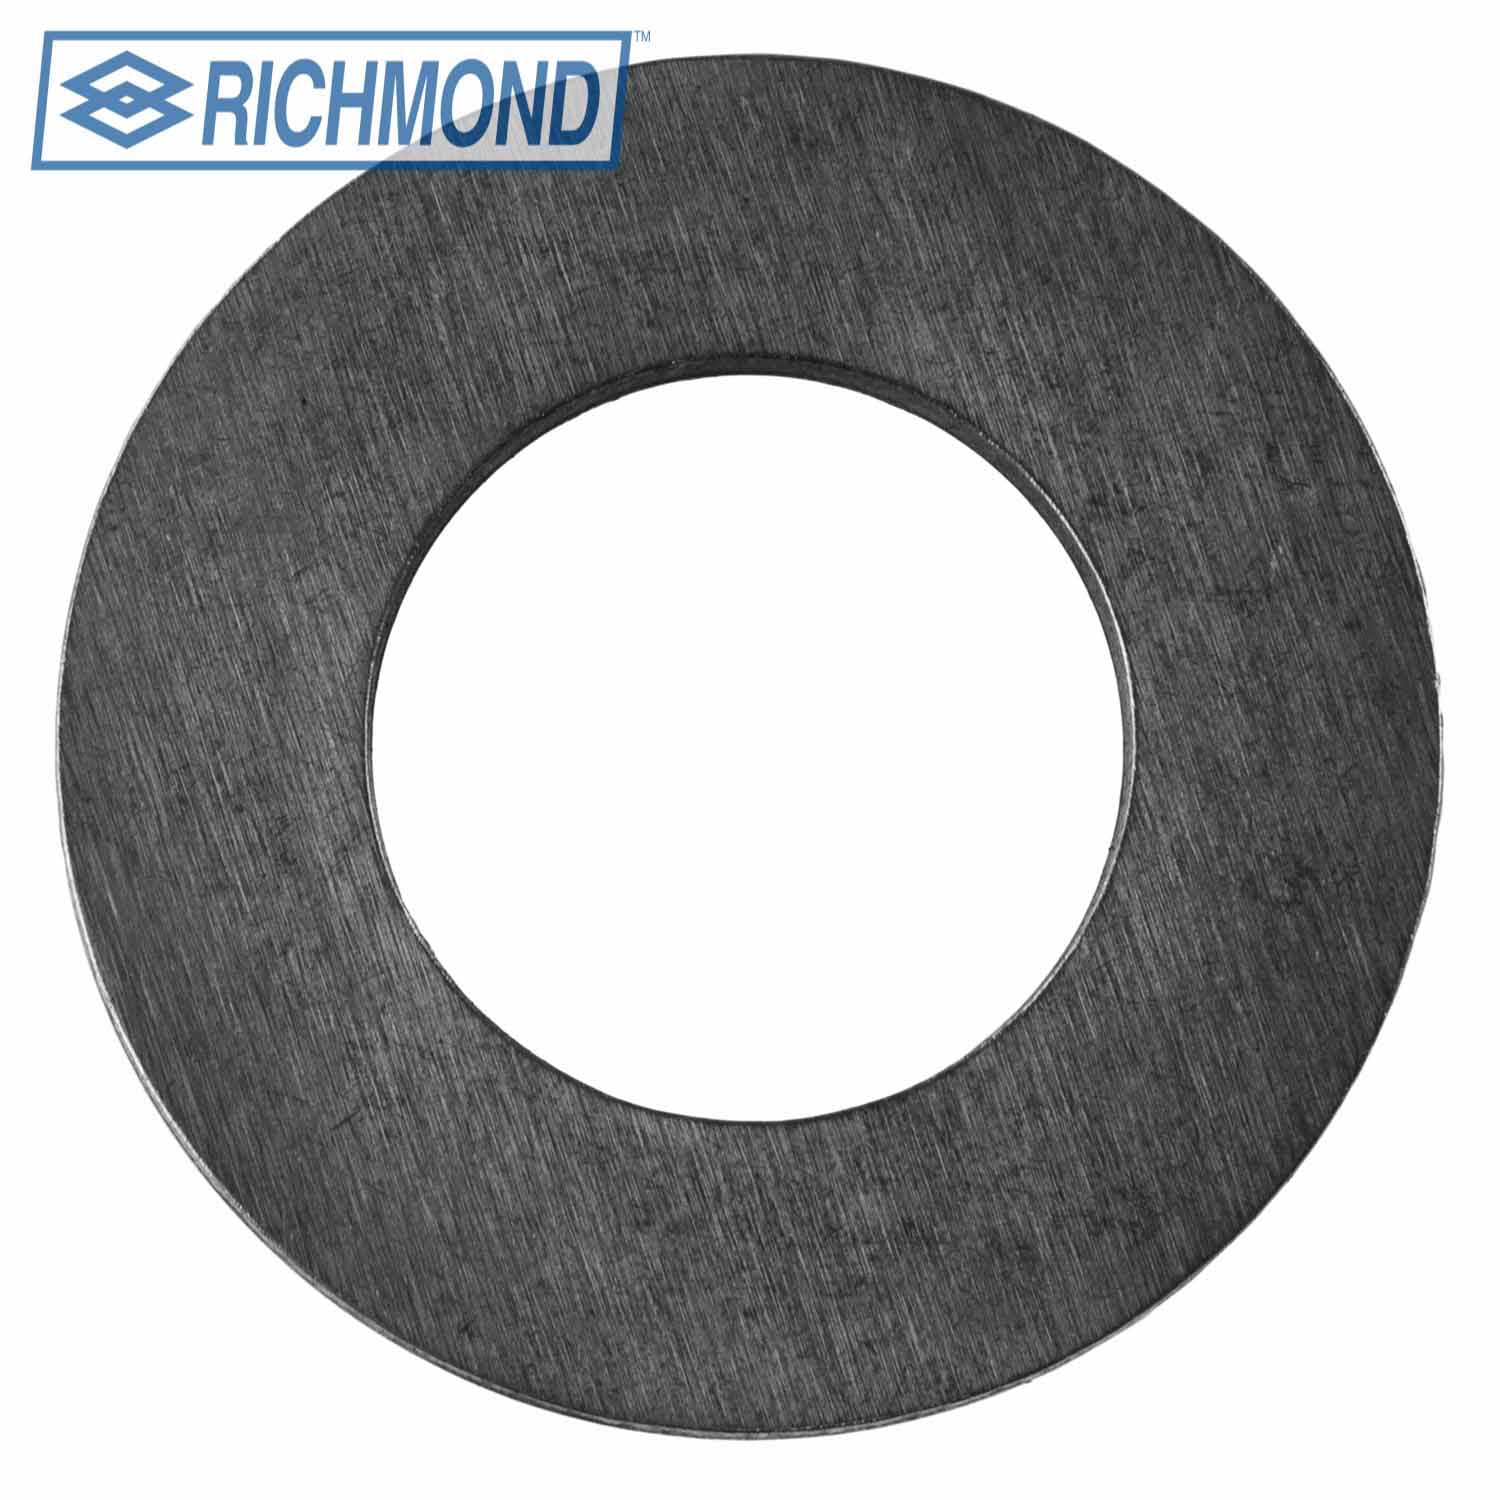 Richmond 1304193002 1st Gear Thrust Washer